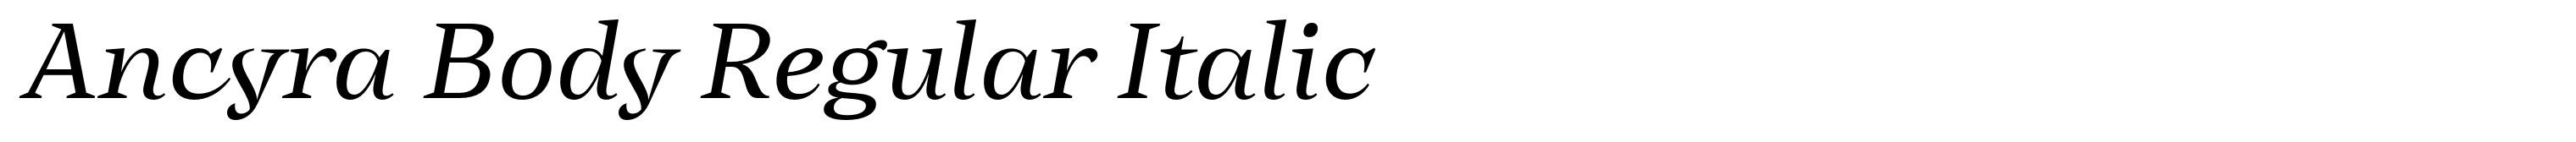 Ancyra Body Regular Italic